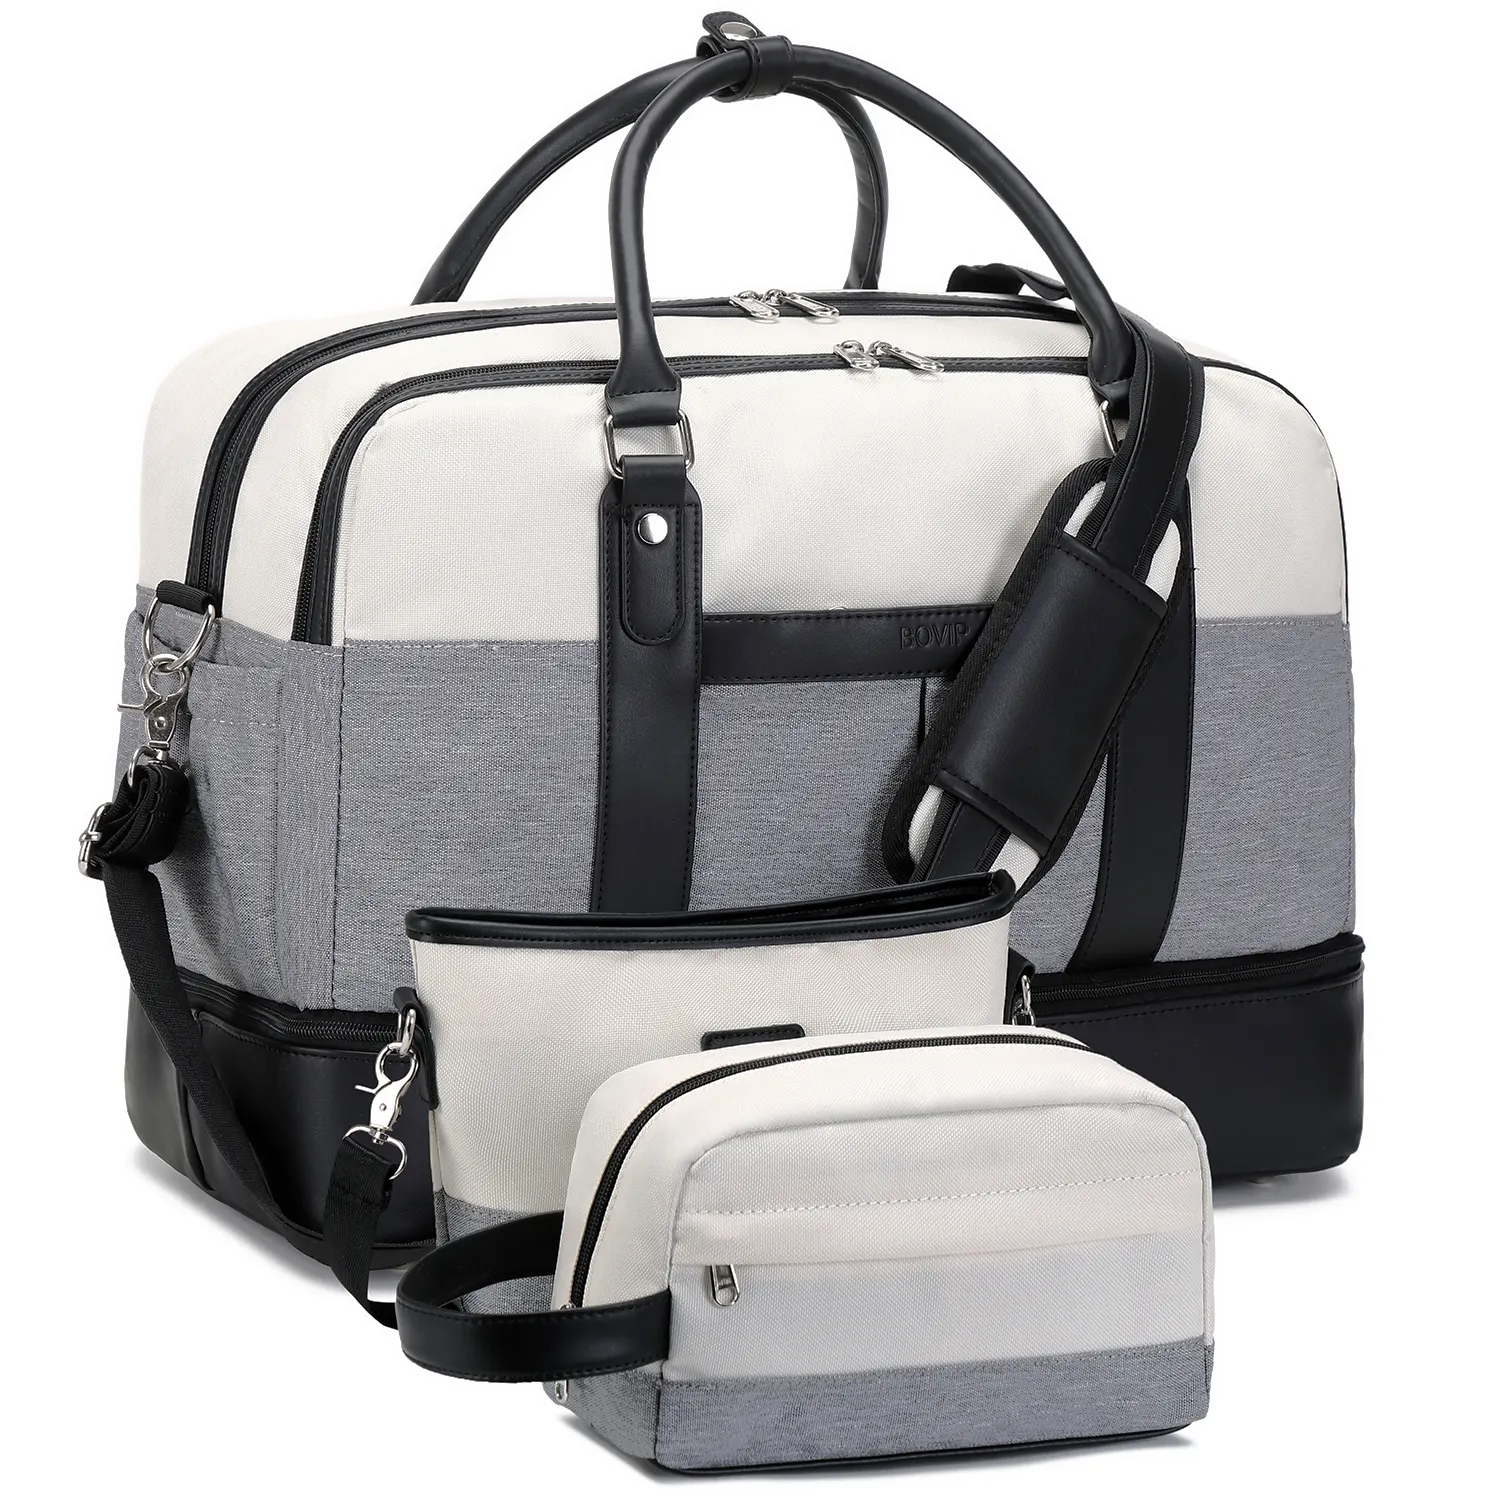 Nerlion özel Logo spor sırt çantası kadın spor seyahat çantası tuval bagaj taşımak bagaj spor çanta su geçirmez küçük seyahat çantası